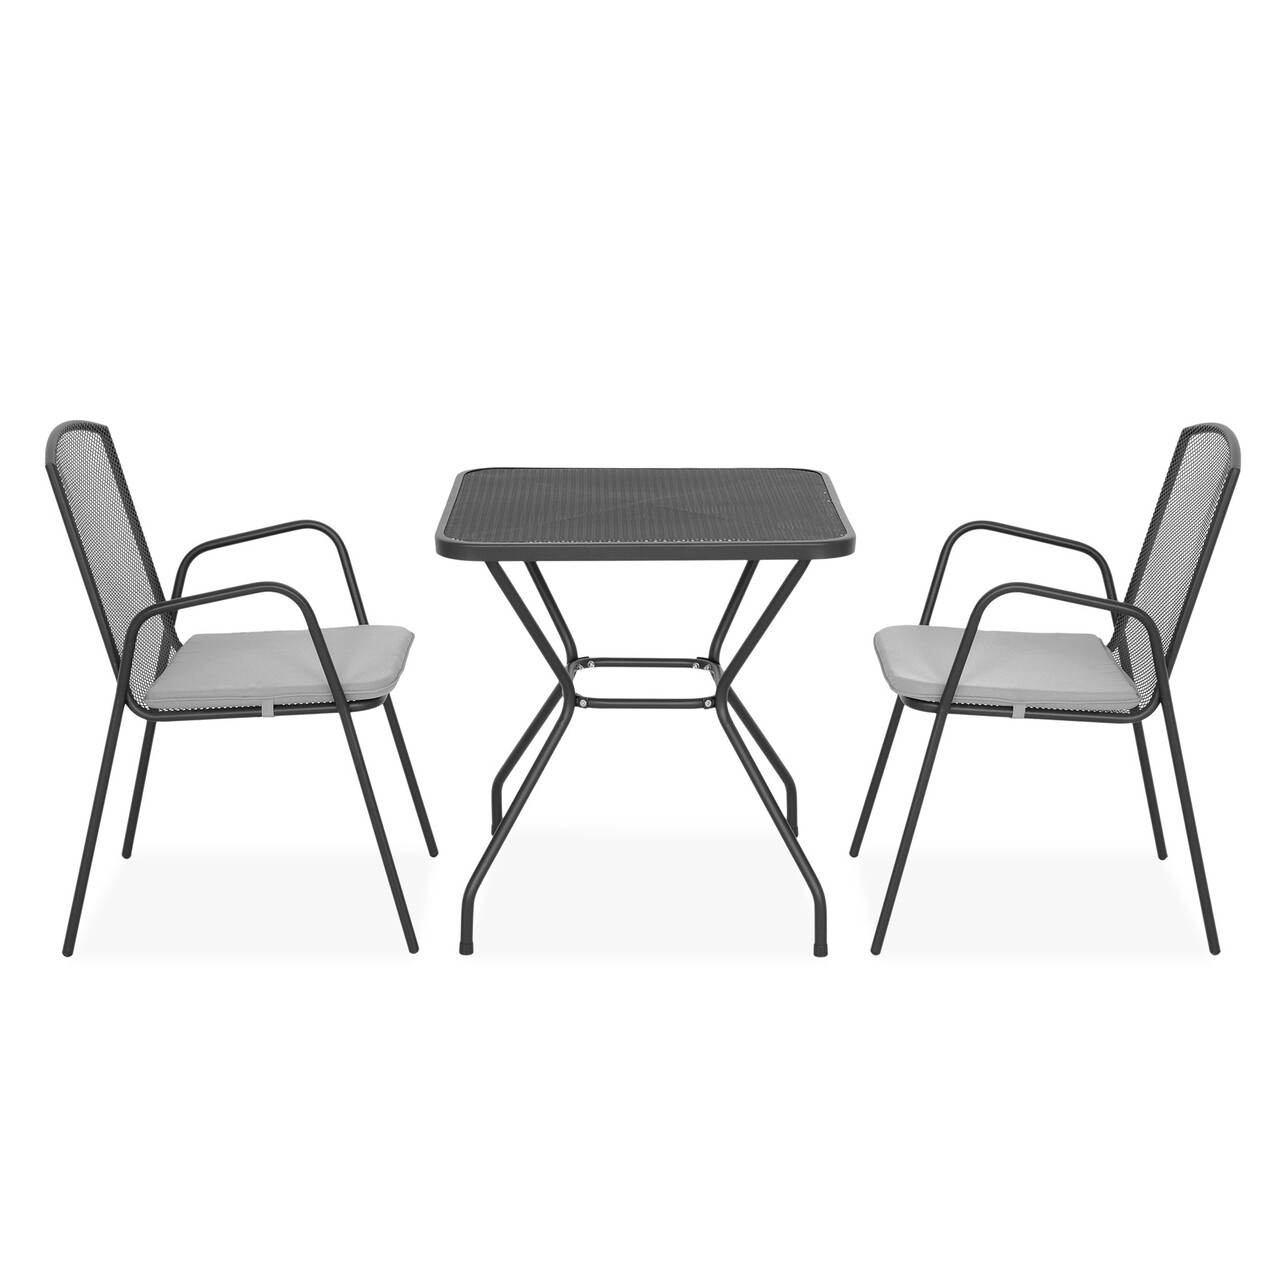 Maison berlin 2 db szék háttámlával és kocka asztal, l.70 l.70 h.72 cm, acél, fekete/szürke